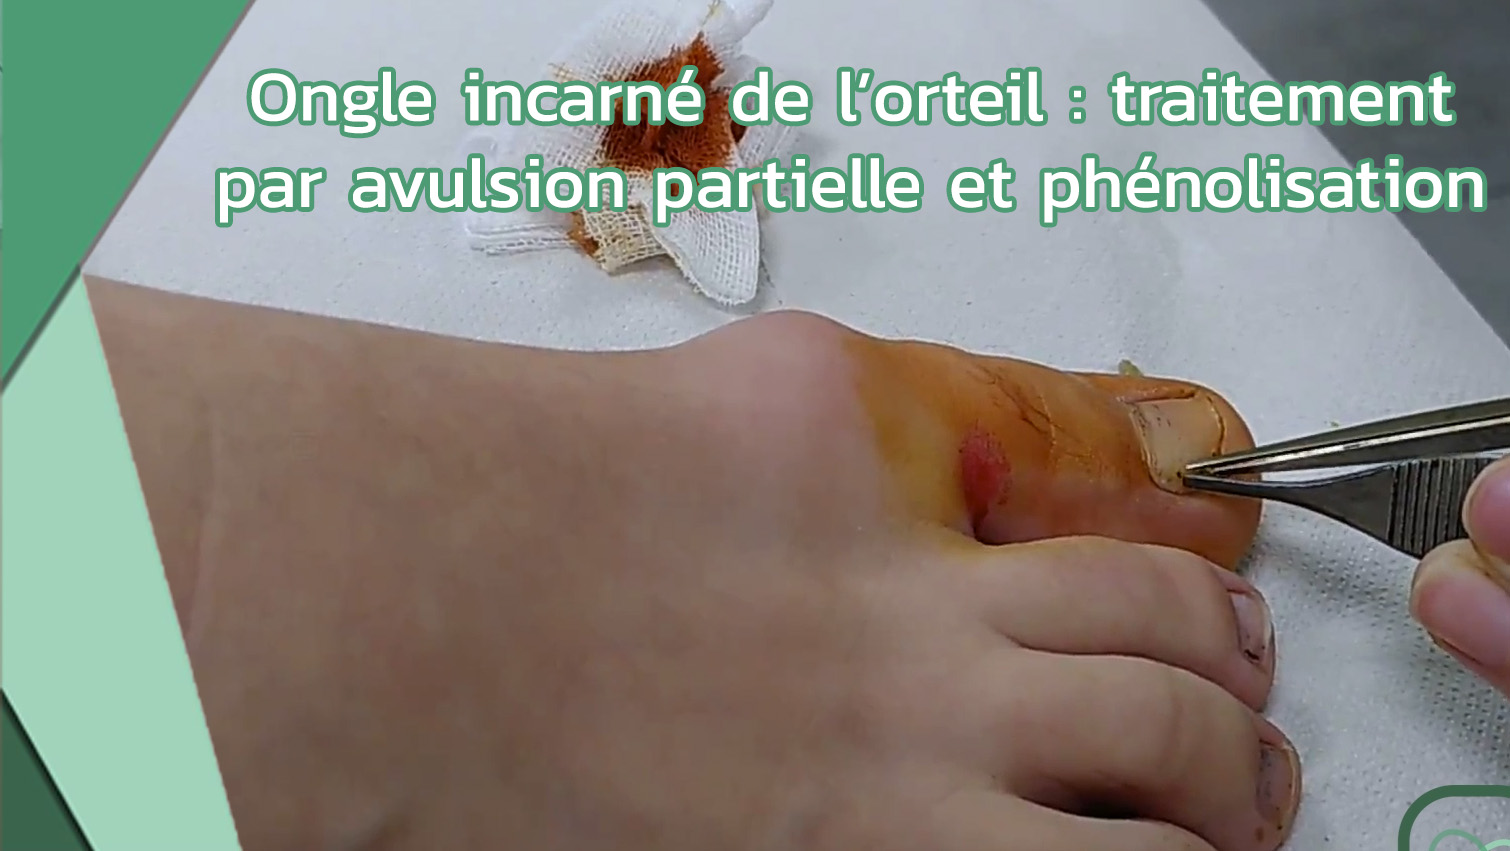 Ongle incarné de l’orteil traitement par avulsion partielle et phénolisation (Dr Mathilde Lechat)